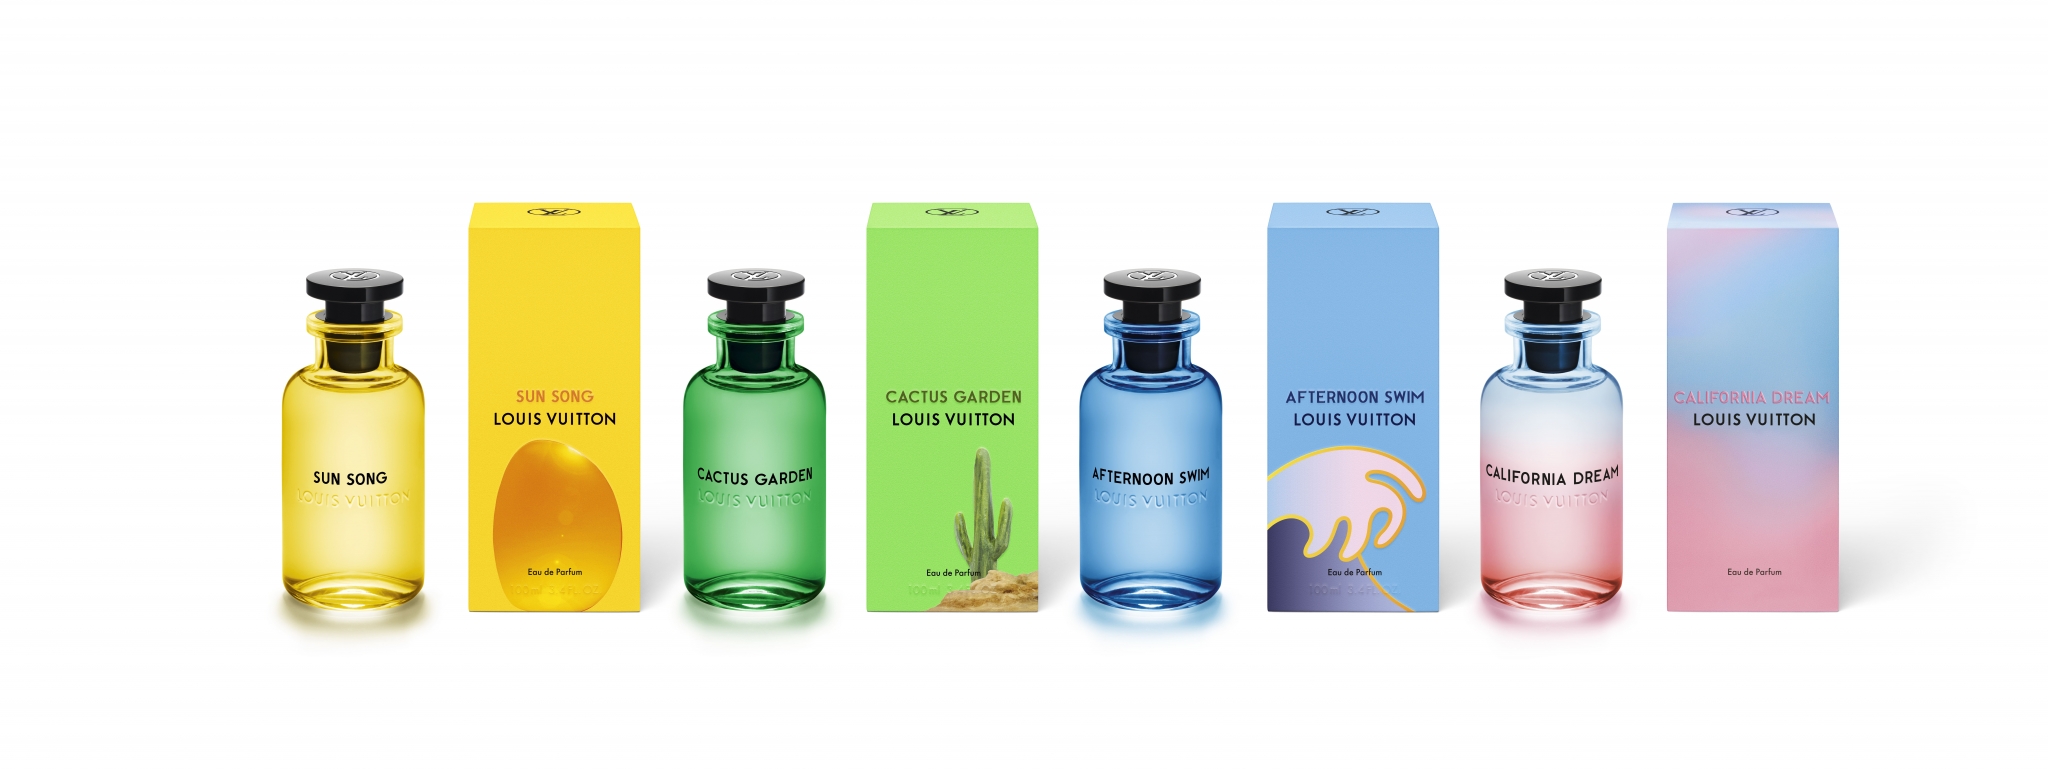 California Dream Louis Vuitton parfum - un nouveau parfum pour homme et femme 2020